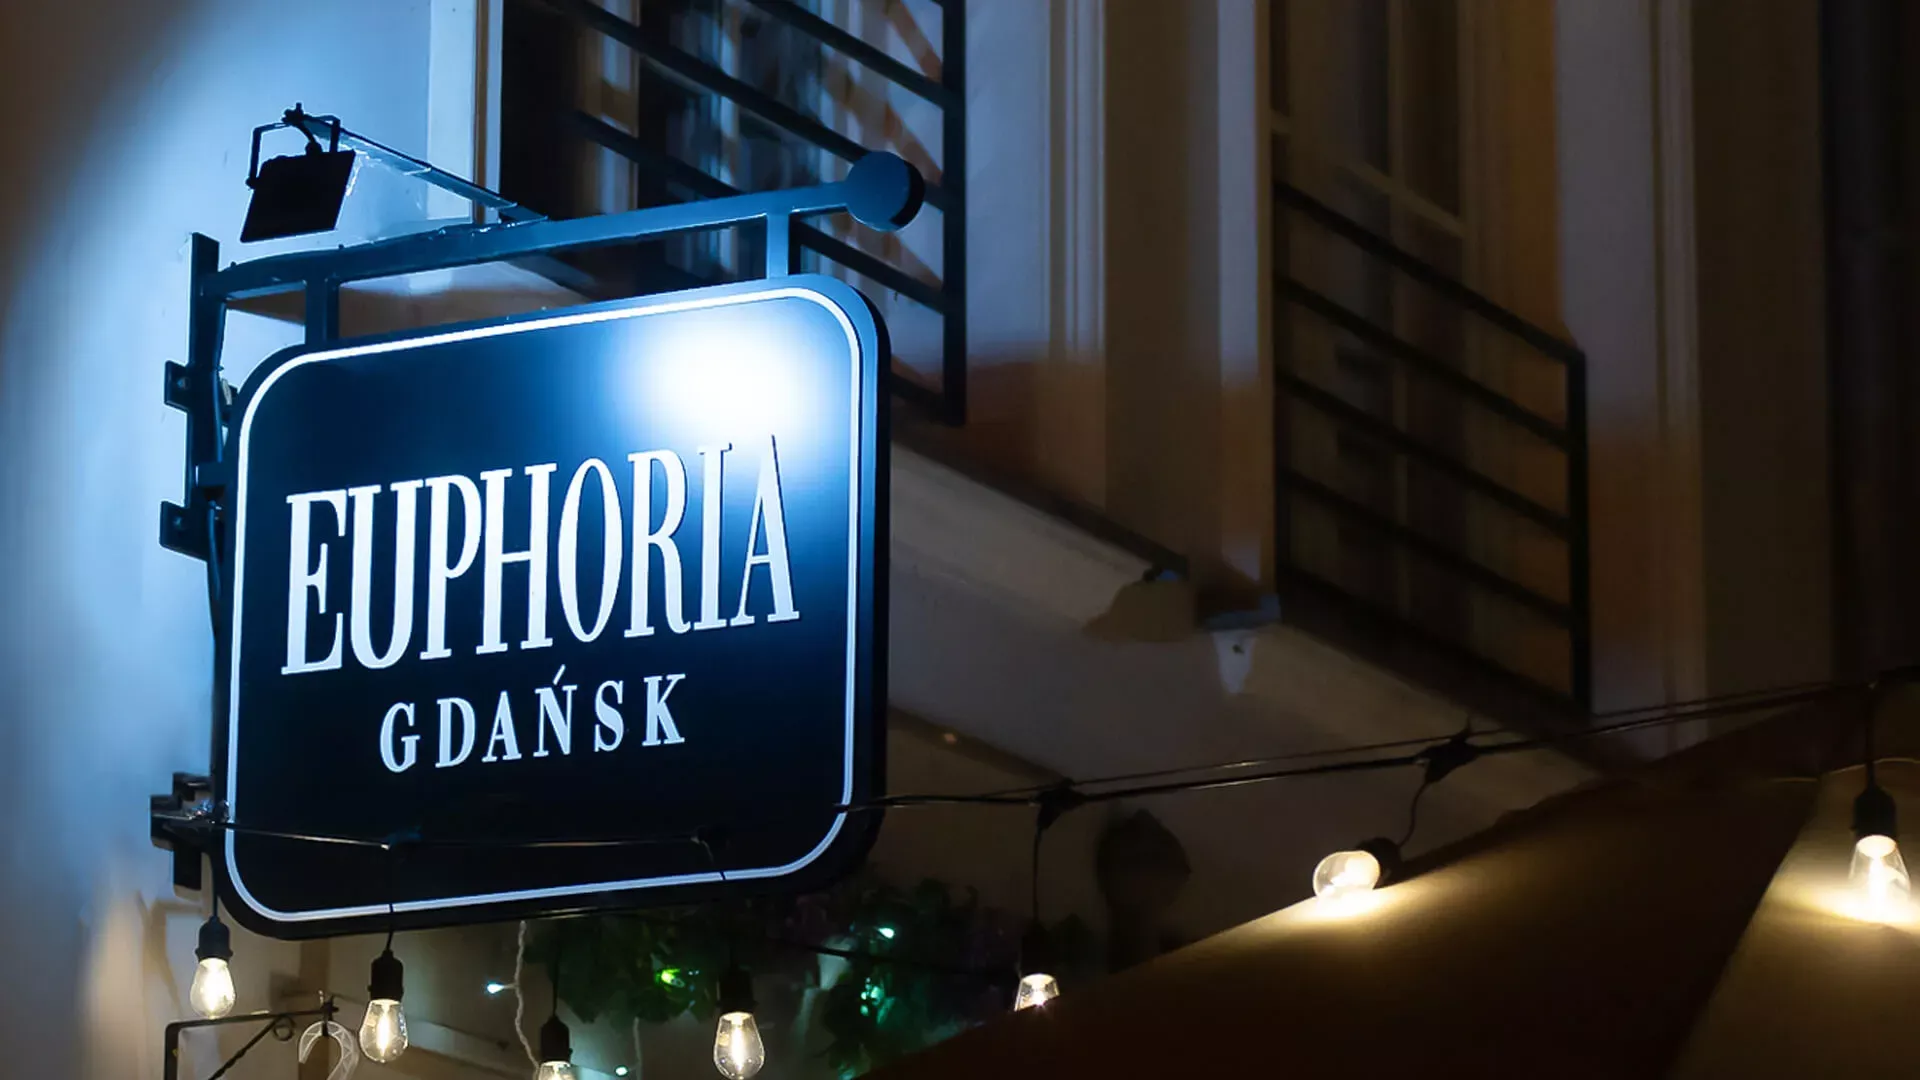 Euphoria Gdańsk - semafor prostopadły, dwustronny w kolorze czarnym z białymi literami w nocy